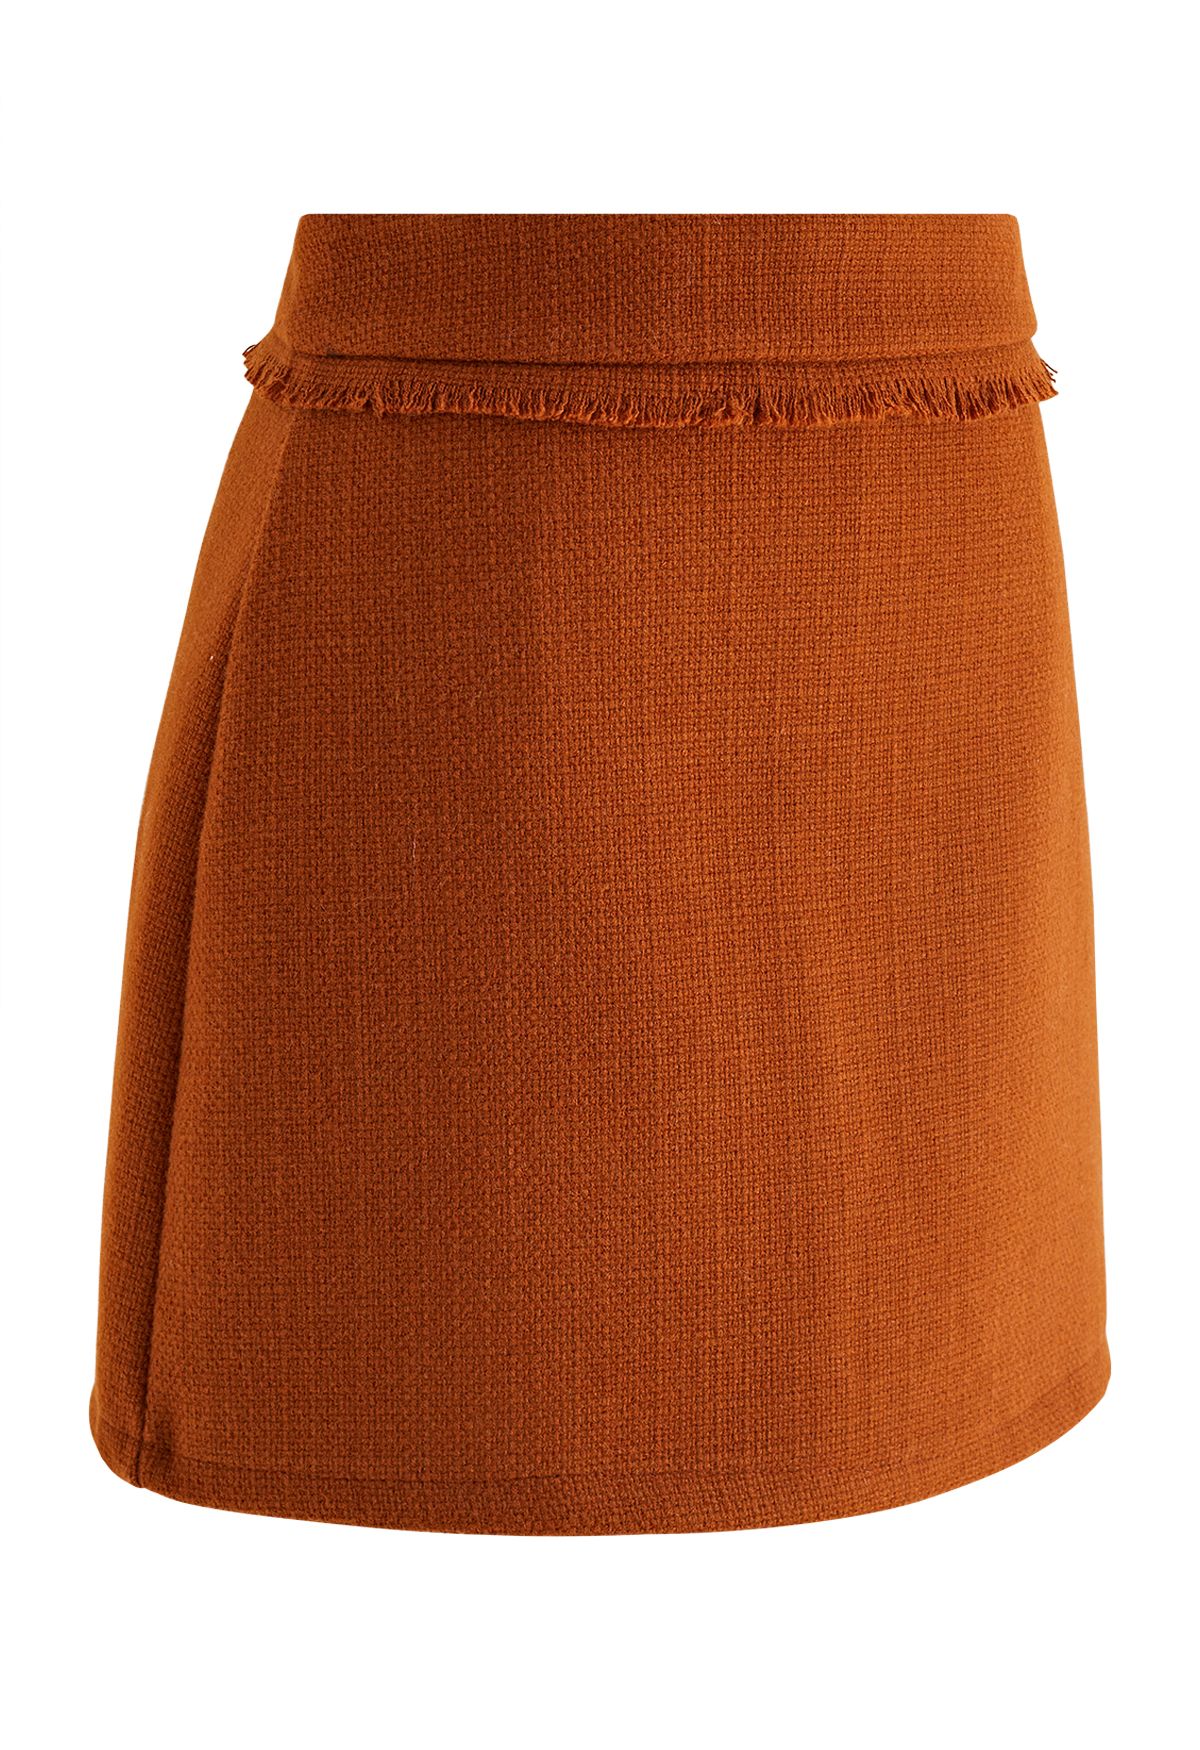 تنورة قصيرة من التويد مزينة بشراشيب باللون البرتقالي